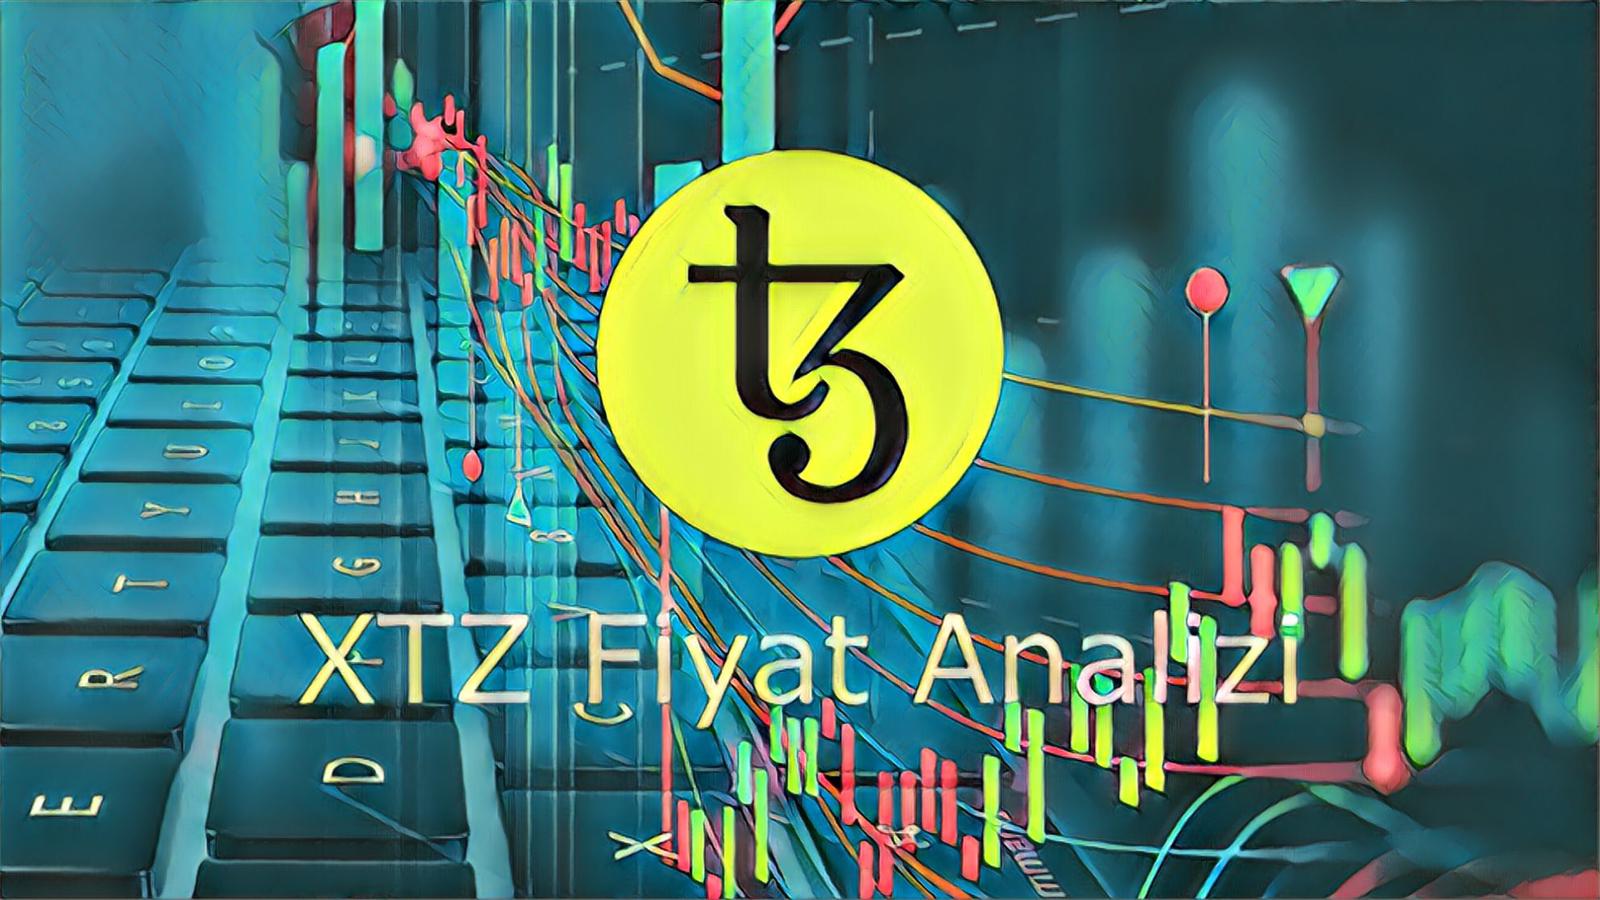 Tezos Fiyat Analizi: XTZ % 30'un Üstünde Bir Artışa Hazırlanıyor